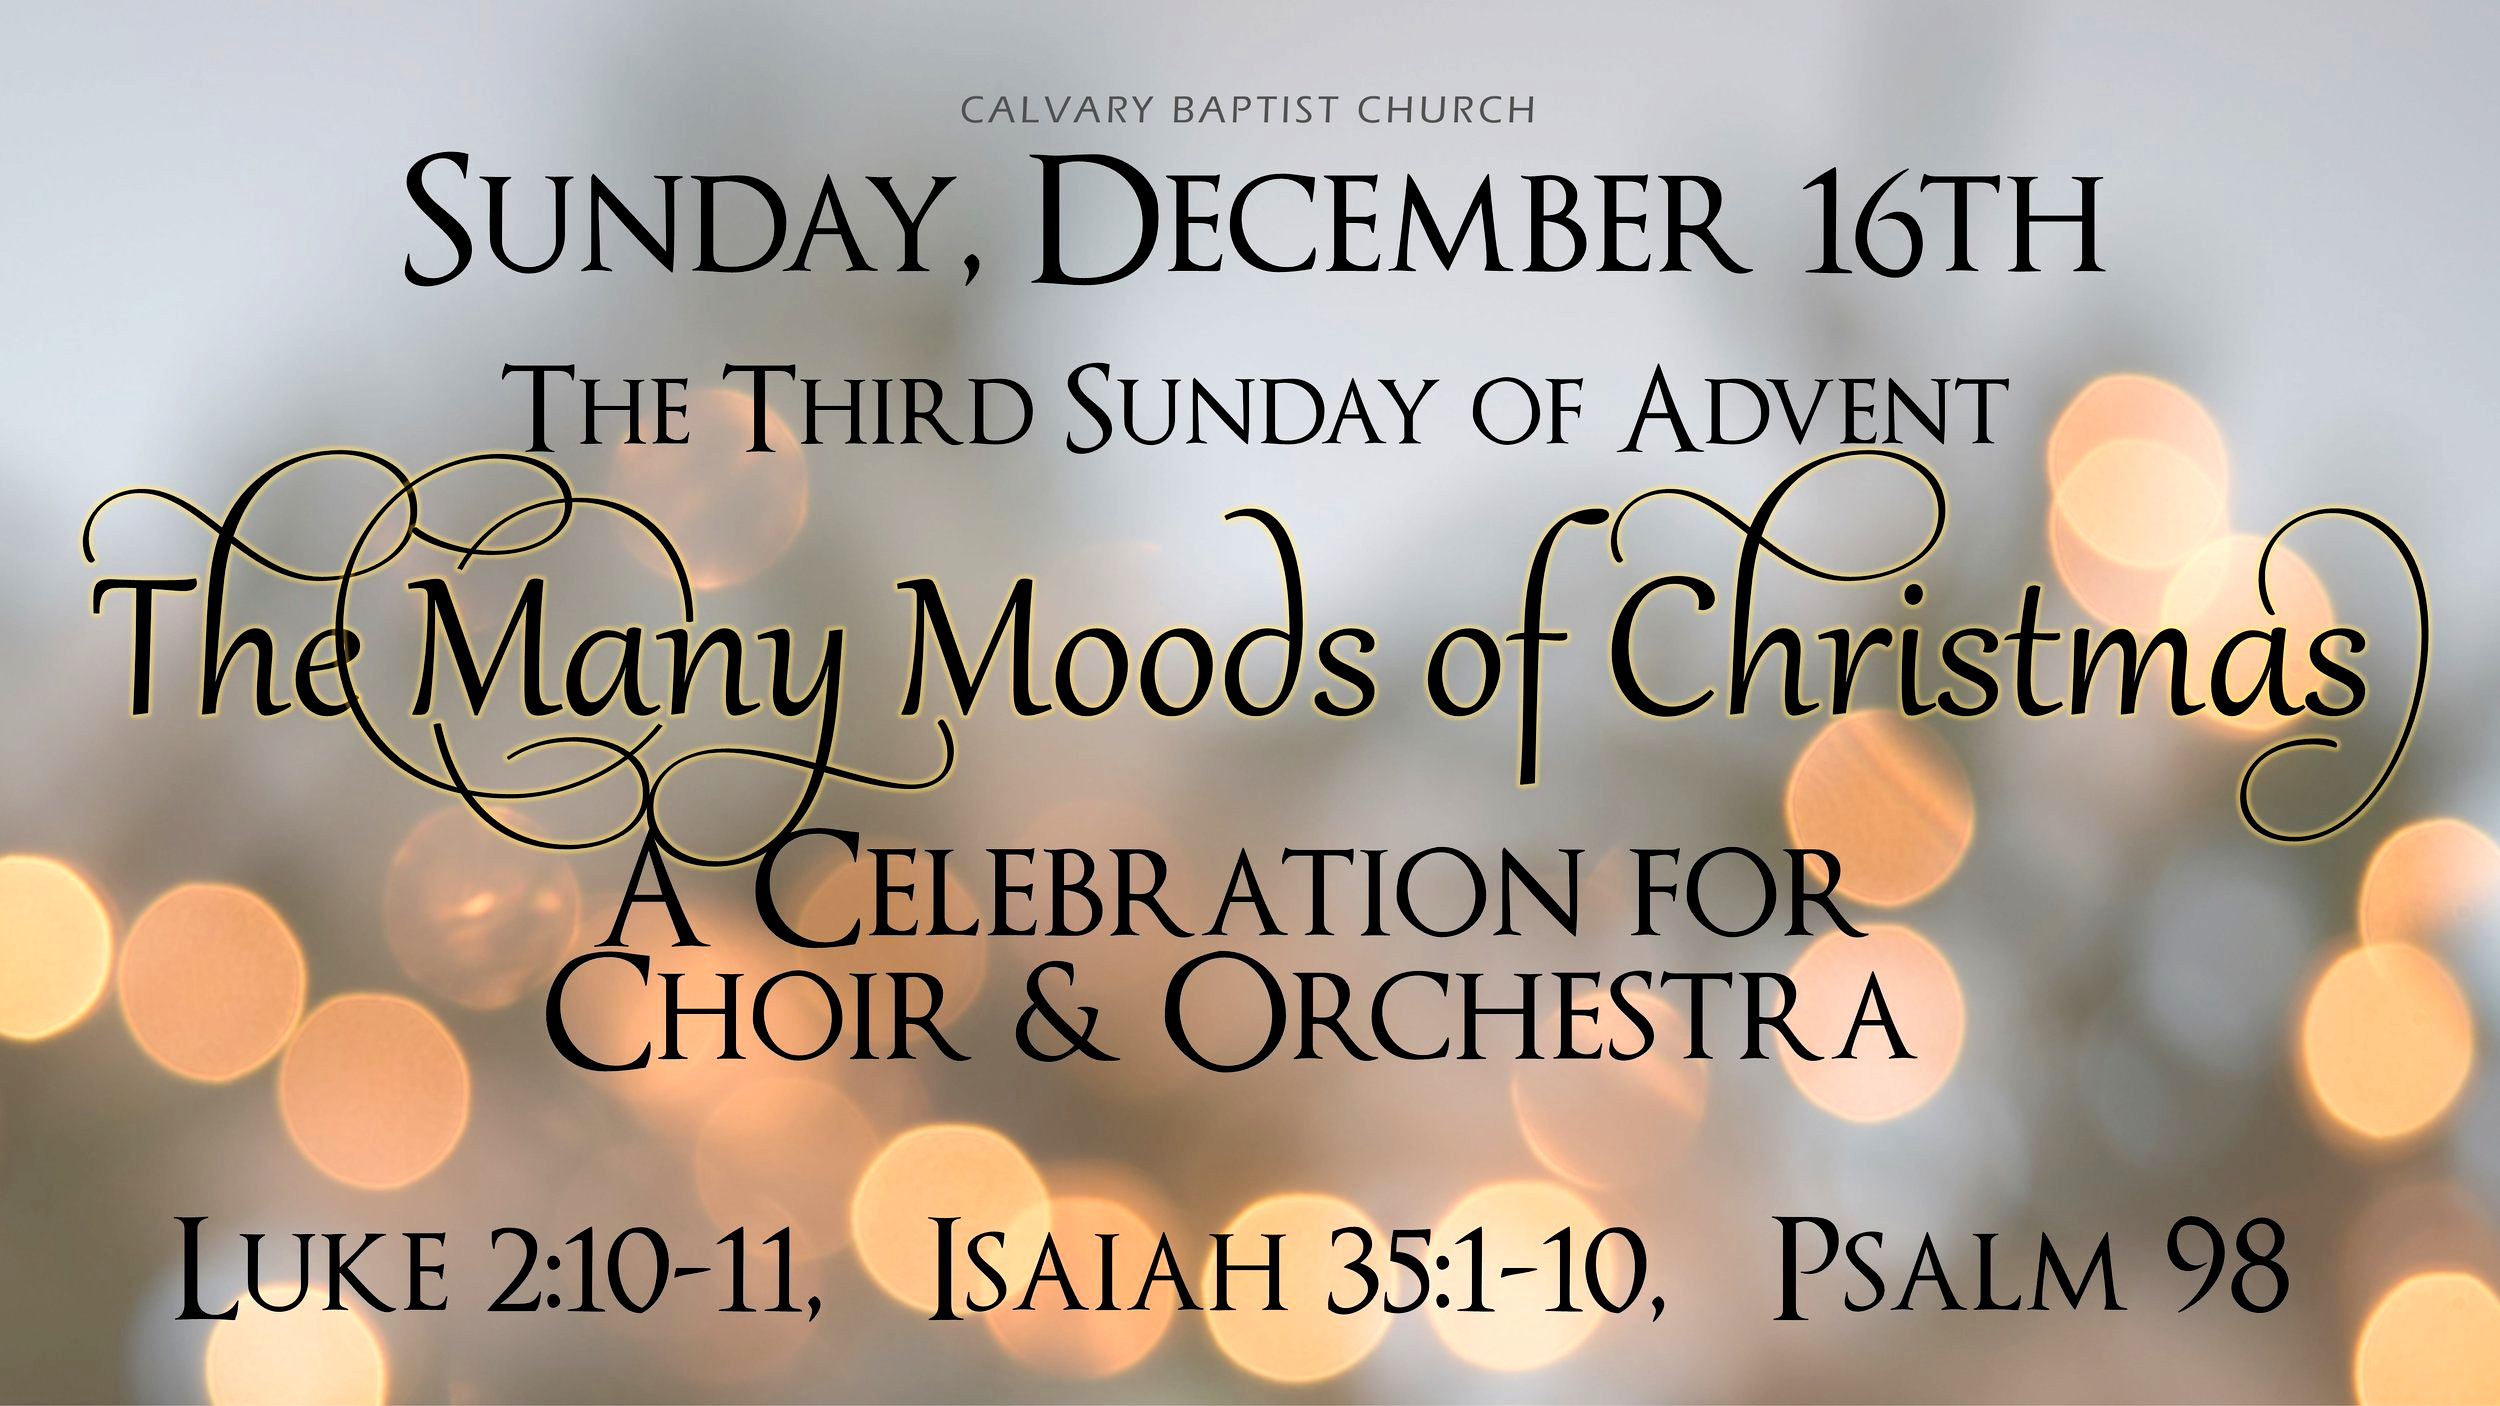 Many+Moods+Christmas+3rd+Week+sermon+Musical+facebook121318.jpg